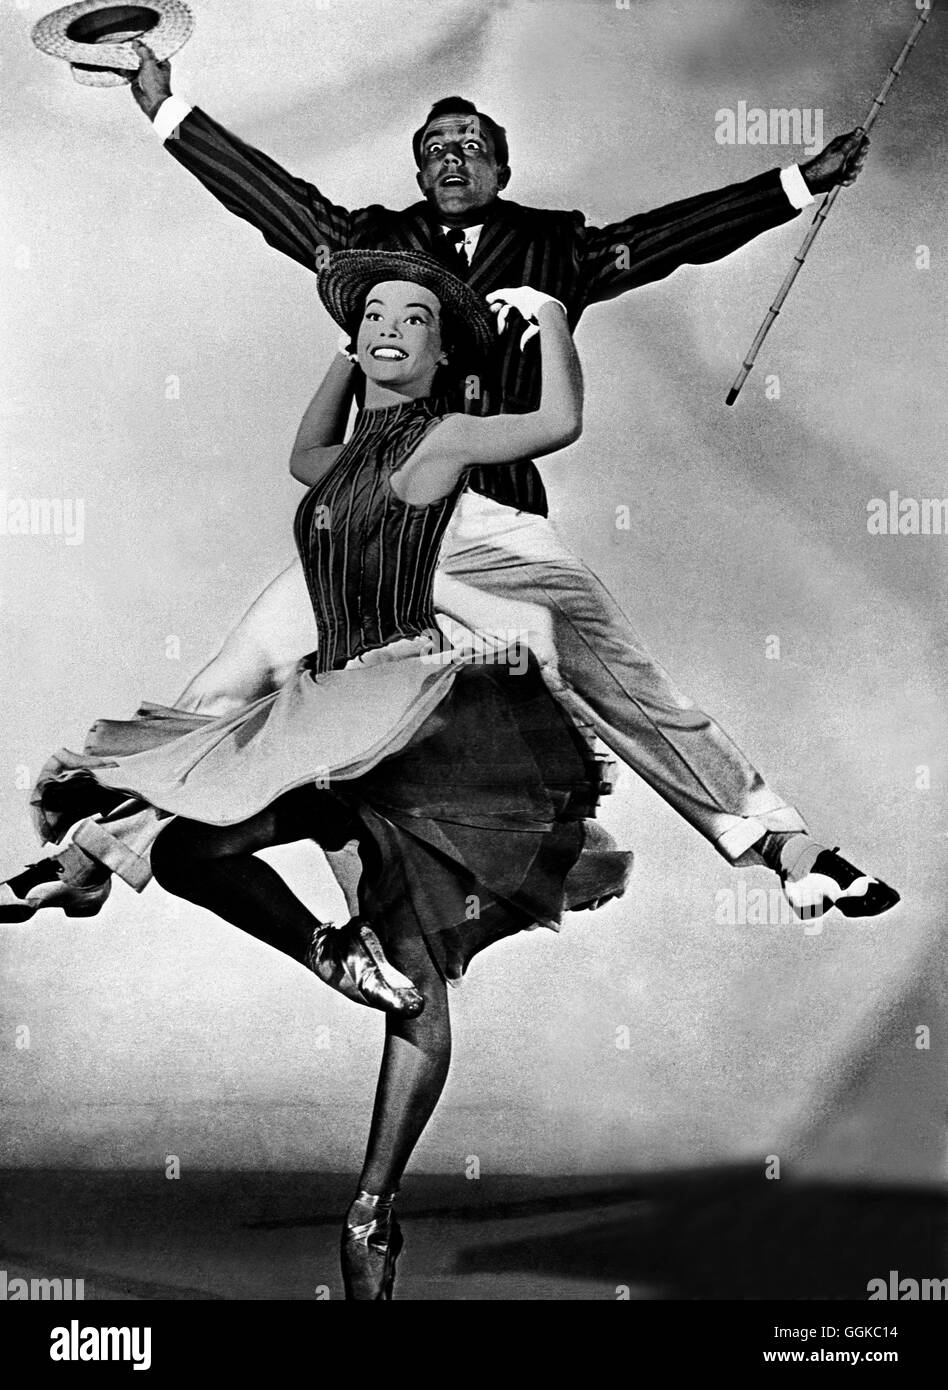 EIN AMERIKANER IN PARIS / Un americano a Parigi USA 1951 / Vincente Minelli  Leslie Caron (Lisa) und GENE KELLY (Jerry Mulligan) tanzen in dem Film "Un  americano a Parigi", 1951. Regie: